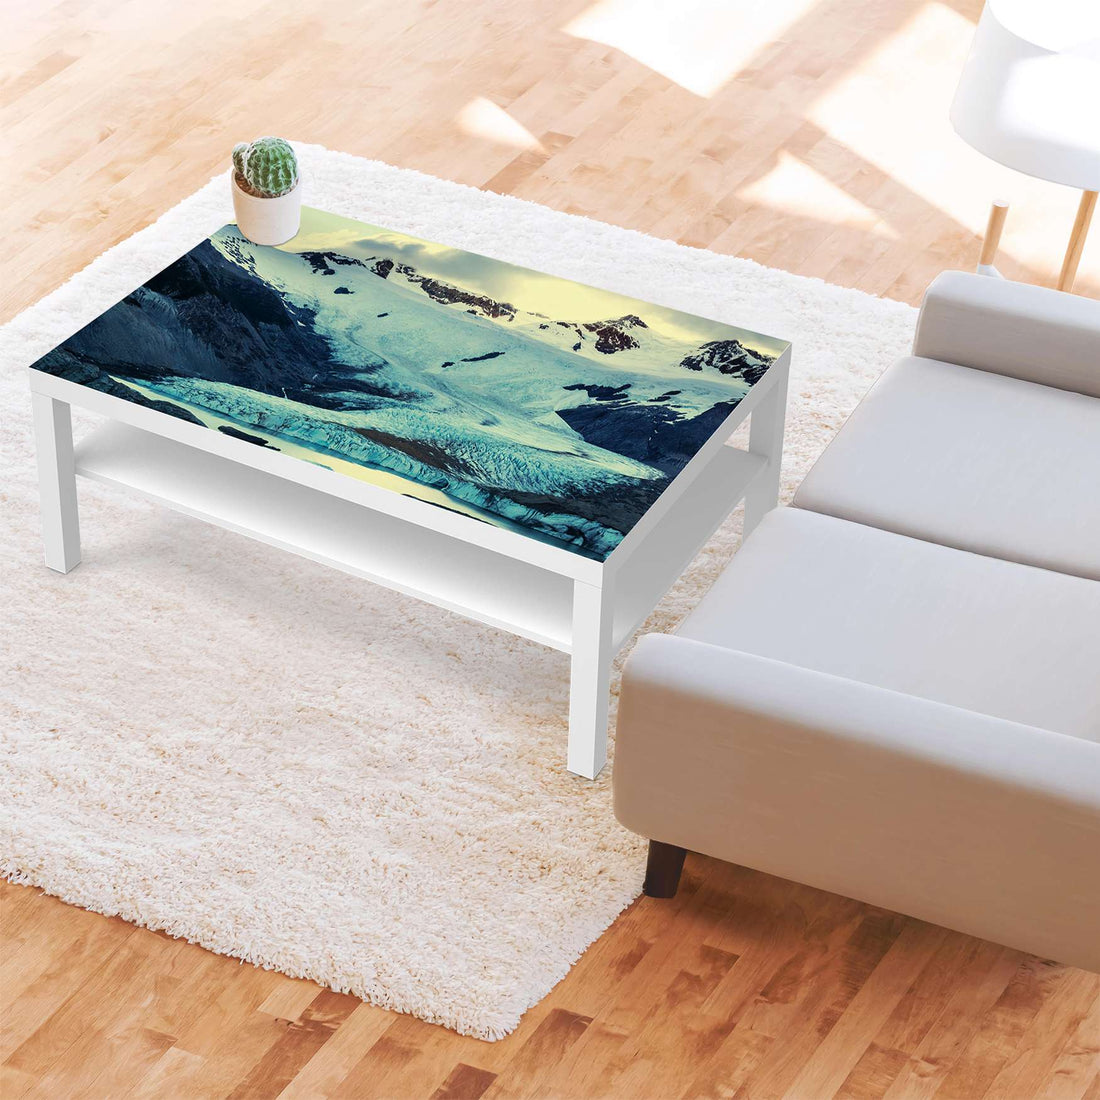 Klebefolie Patagonia - IKEA Lack Tisch 118x78 cm - Wohnzimmer